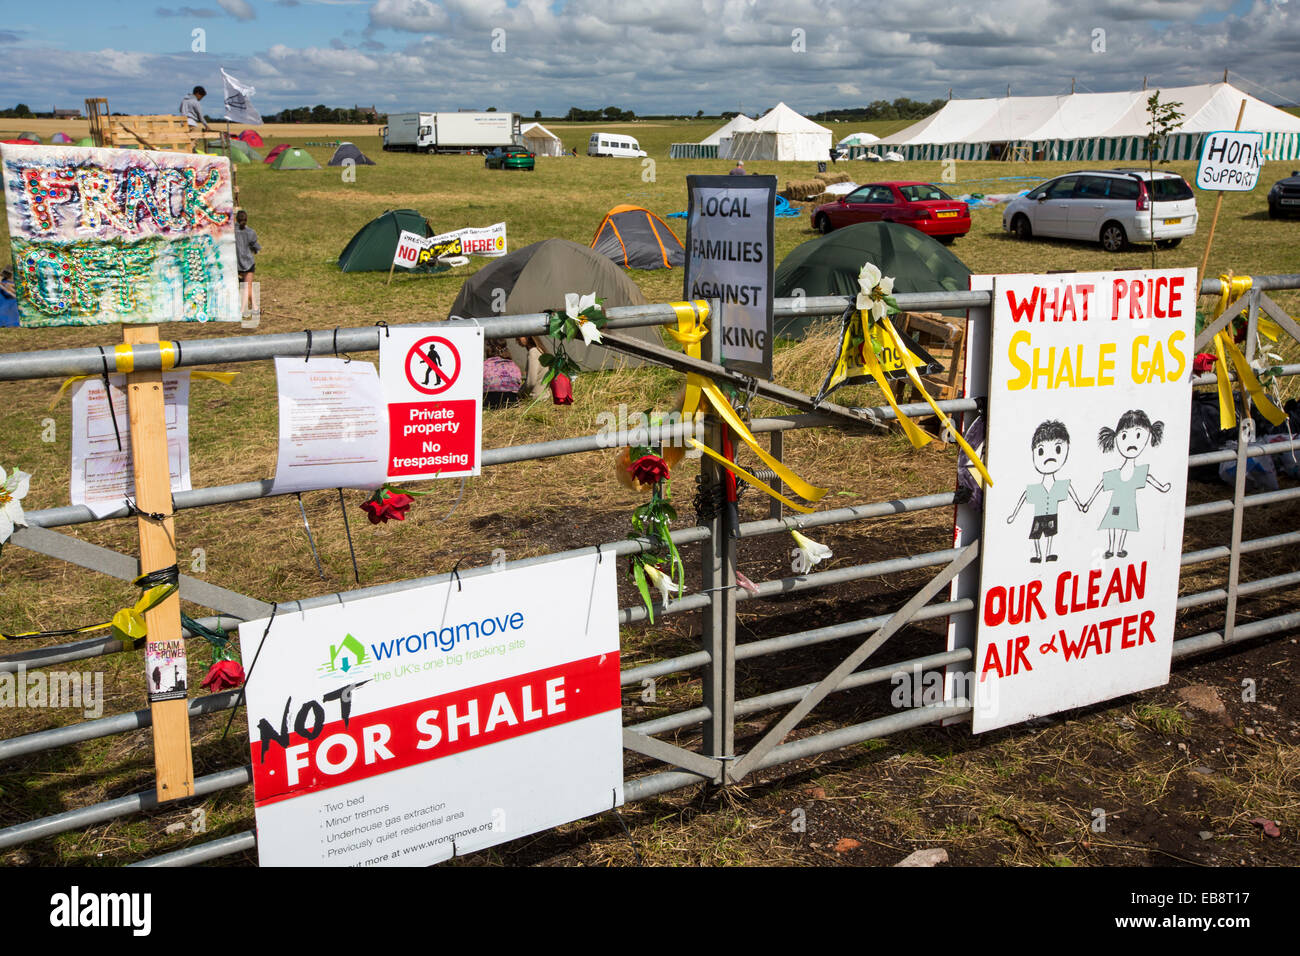 Un accampamento di protesta contro fracking in corrispondenza di un sito di fattoria a poco Plumpton vicino a Blackpool, Lancashire, Regno Unito, dove il consiglio per la prima volta nel Regno Unito, ha concesso il permesso di pianificazione per fracking commerciale fro shale gas, da Cuadrilla. Foto Stock